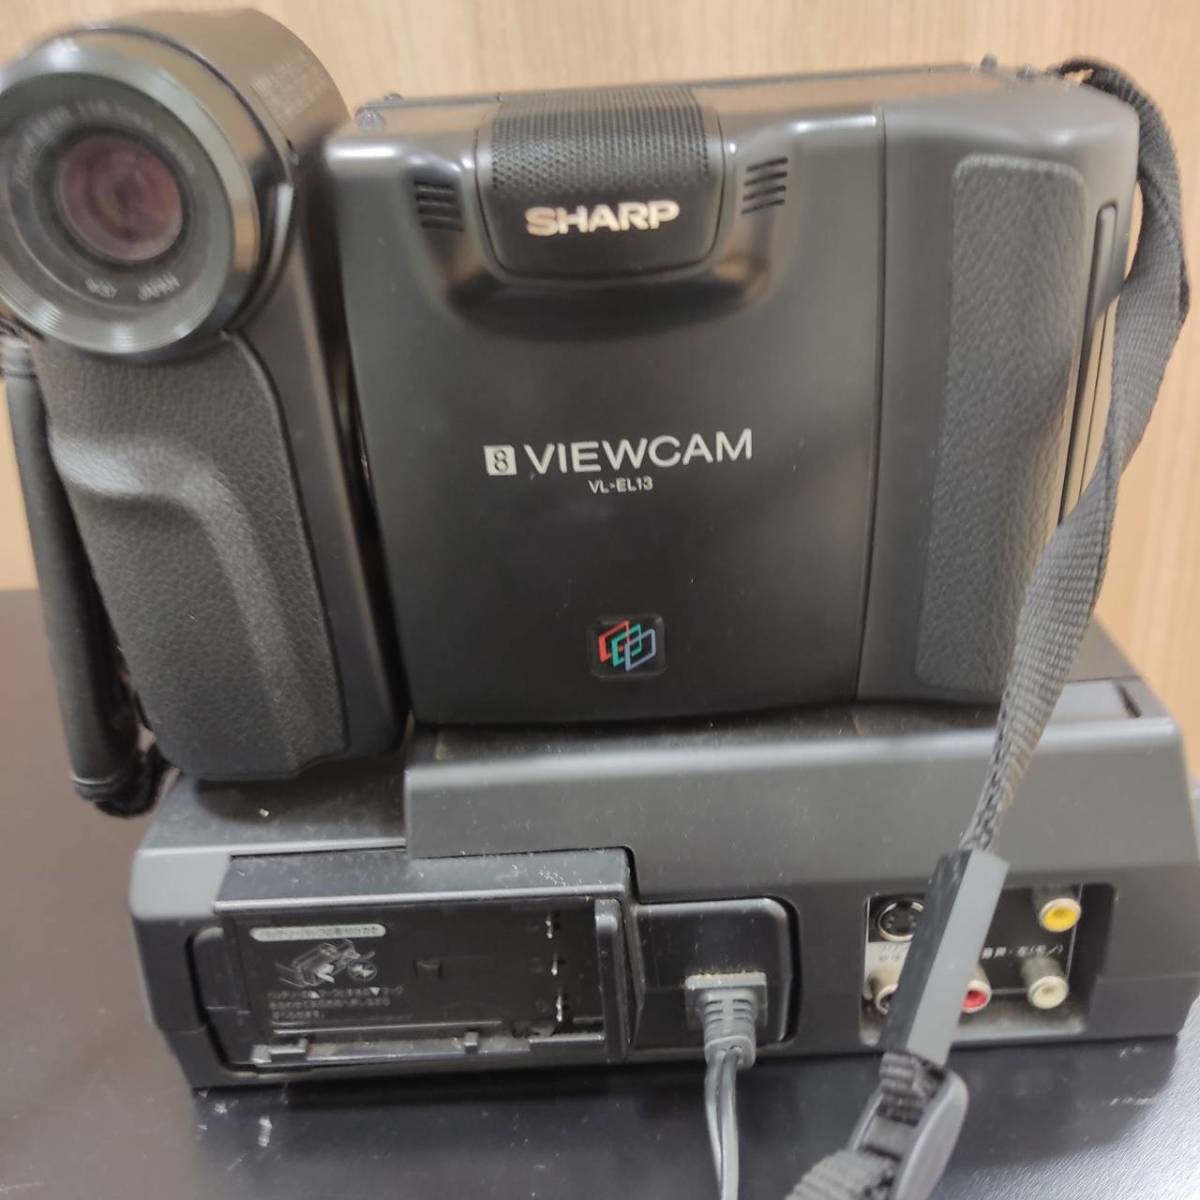 #7236【ジャンク】SHARP VIEWCAM VL-EL13 シャープ ビデオカメラ 保存バッグ、バッテリー、説明書付き 通電確認のみ の画像2